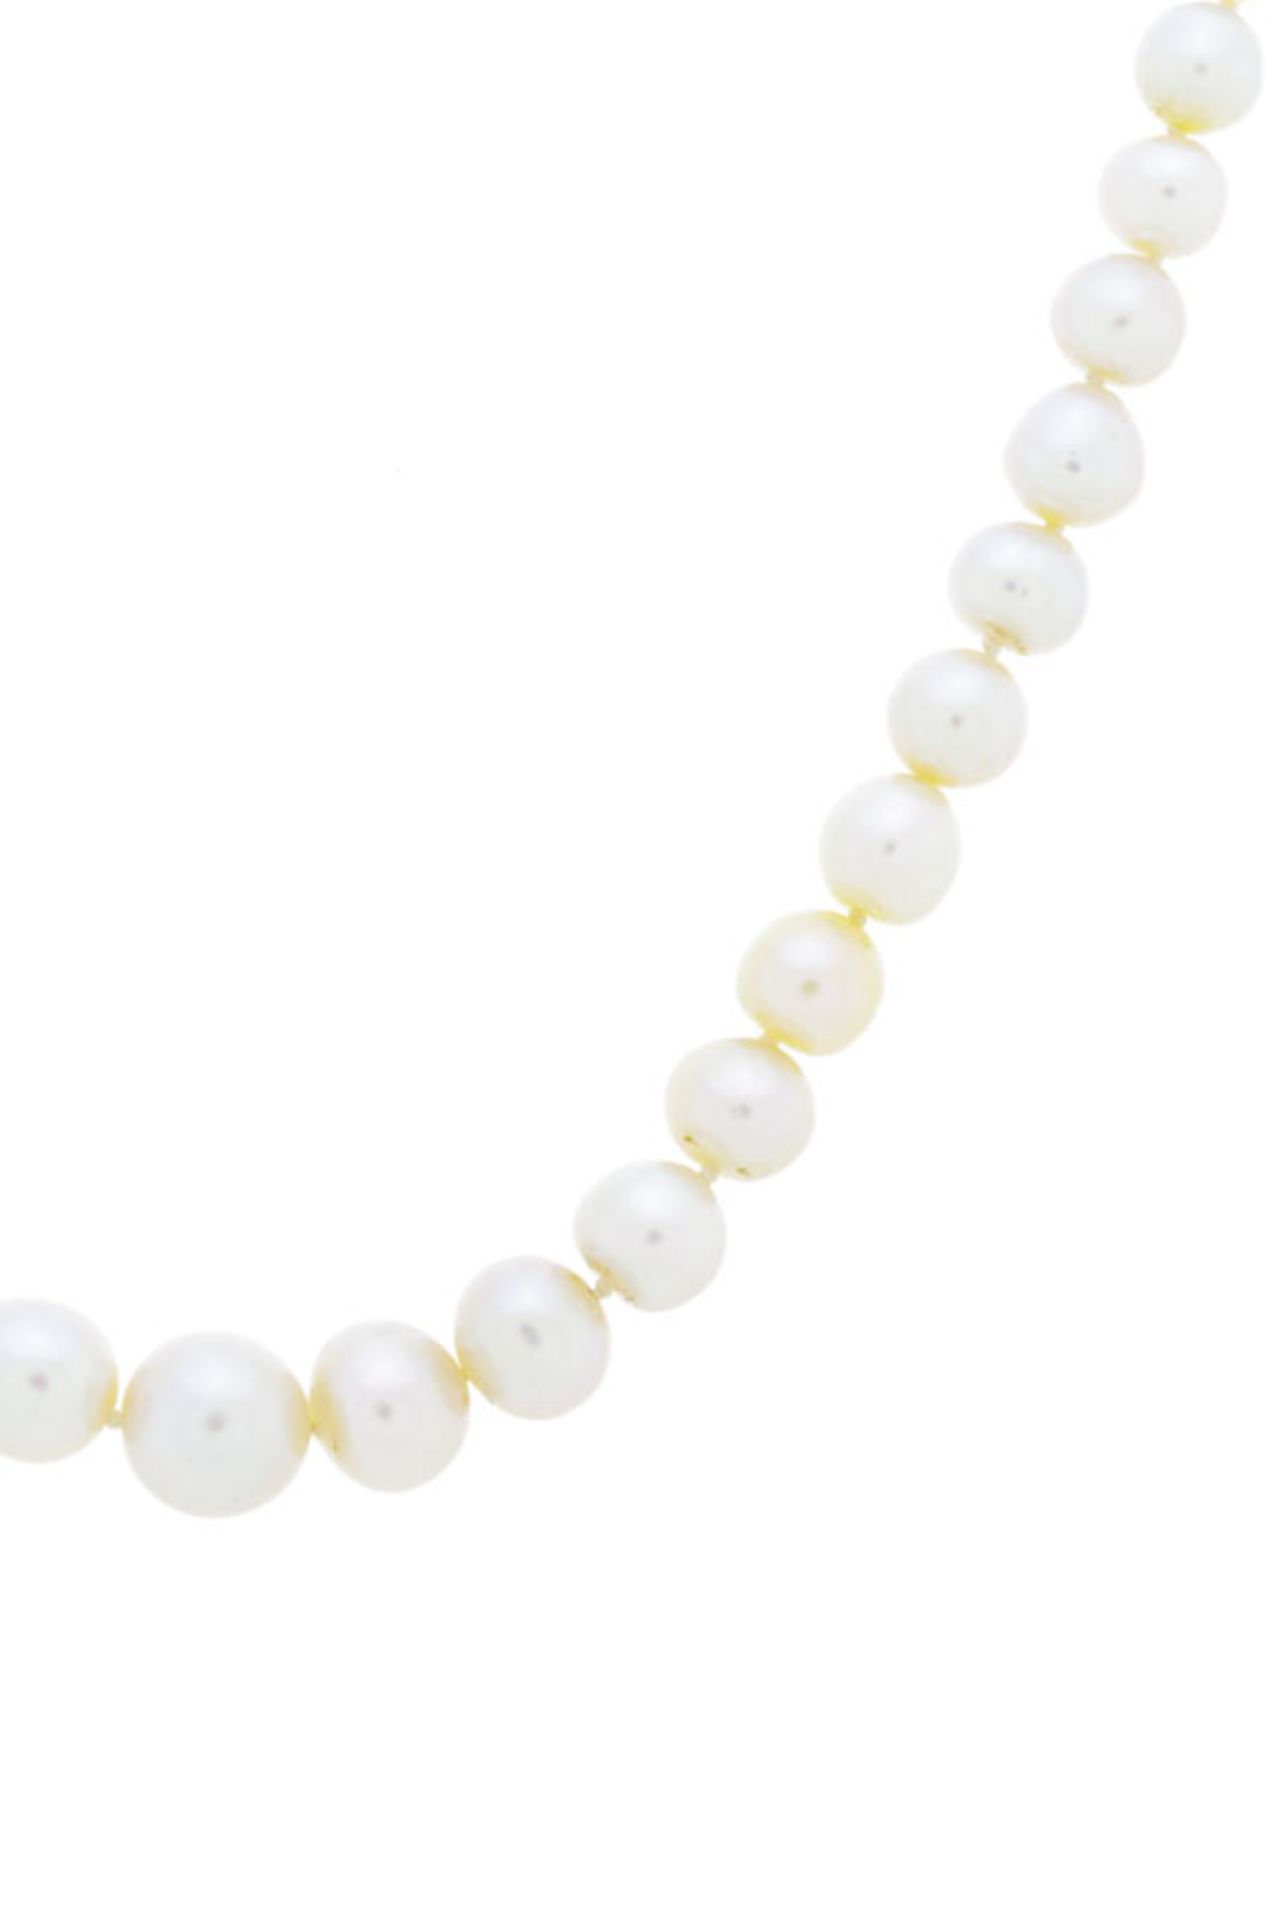 Collier 1 rang de perles blanches naturelles, fermoir XIXe s. 2 ors serti d'un cabochon d'émeraude e - Image 2 of 5